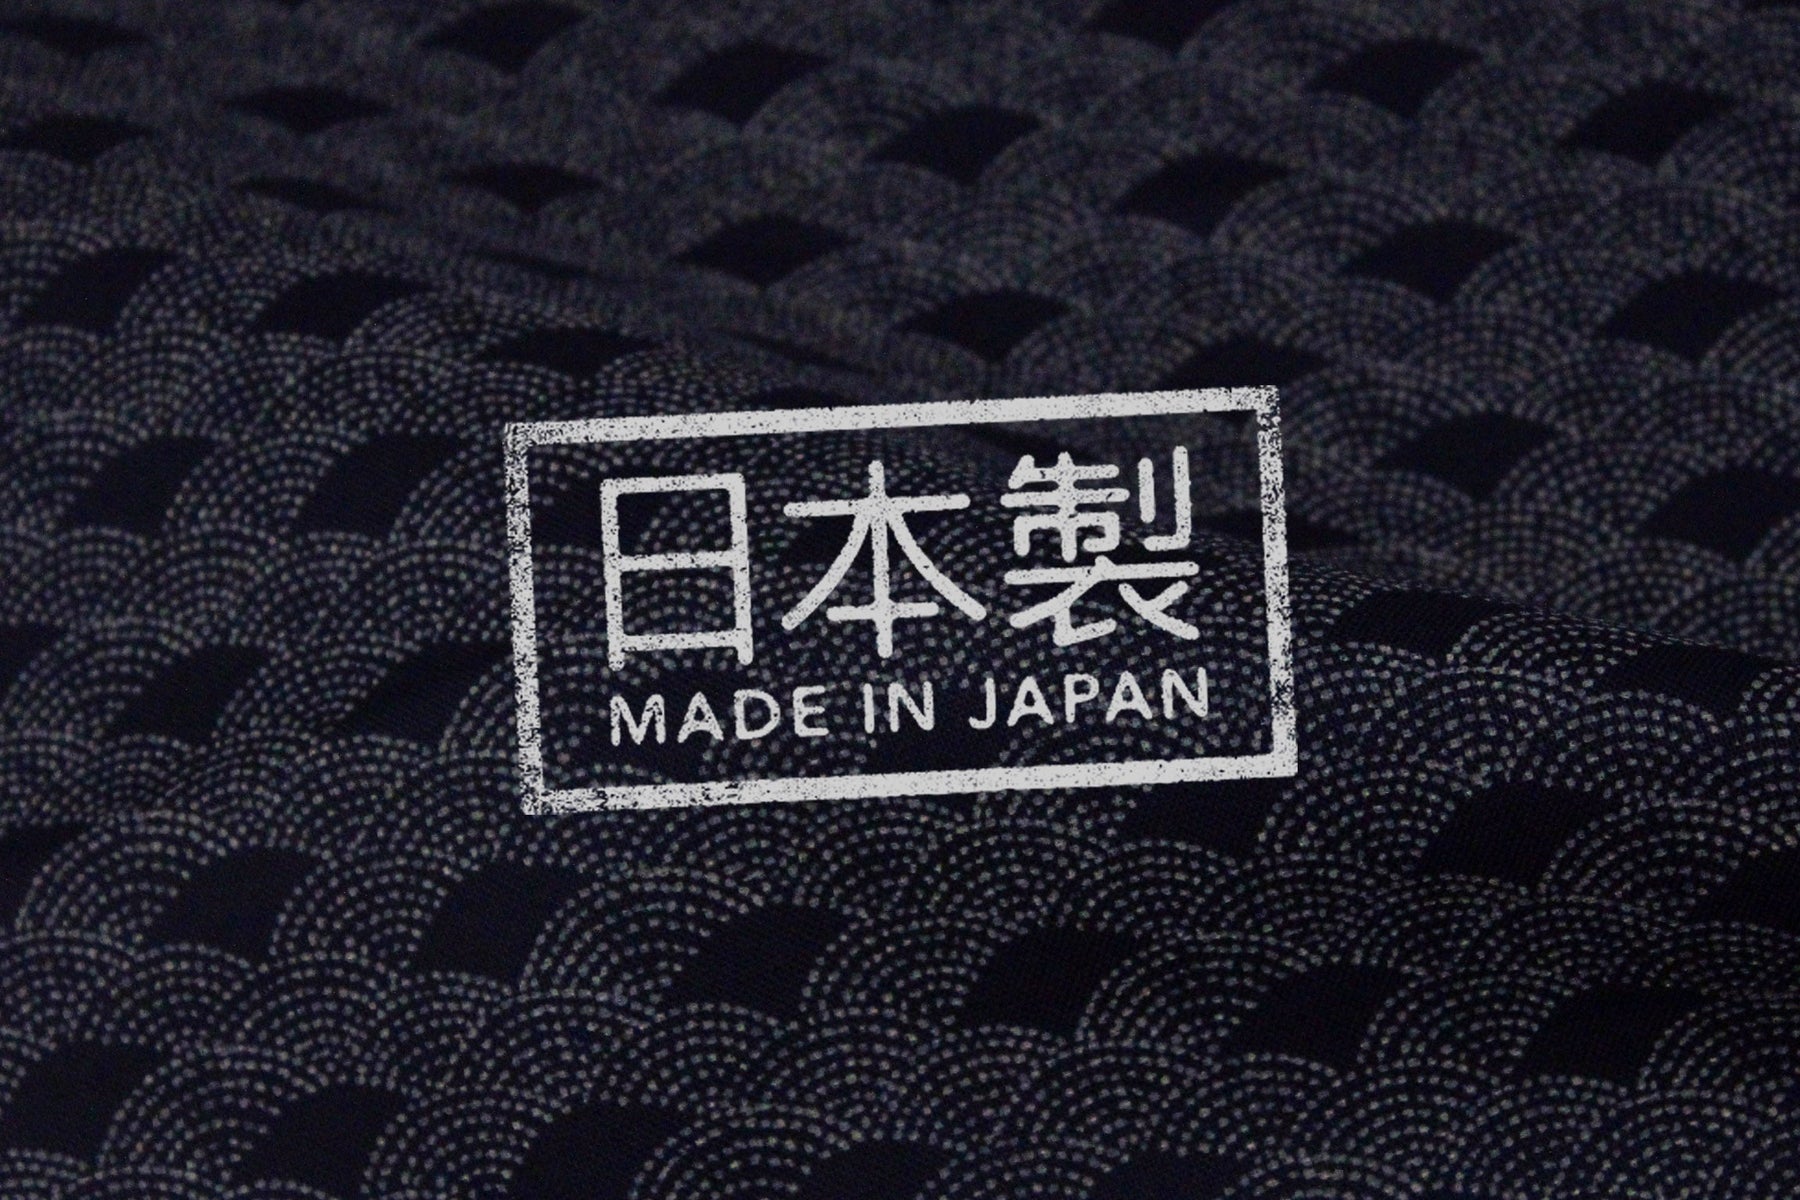 Tissus de fabrication japonaise : premier arrivage 2022 ! #madeinjapan